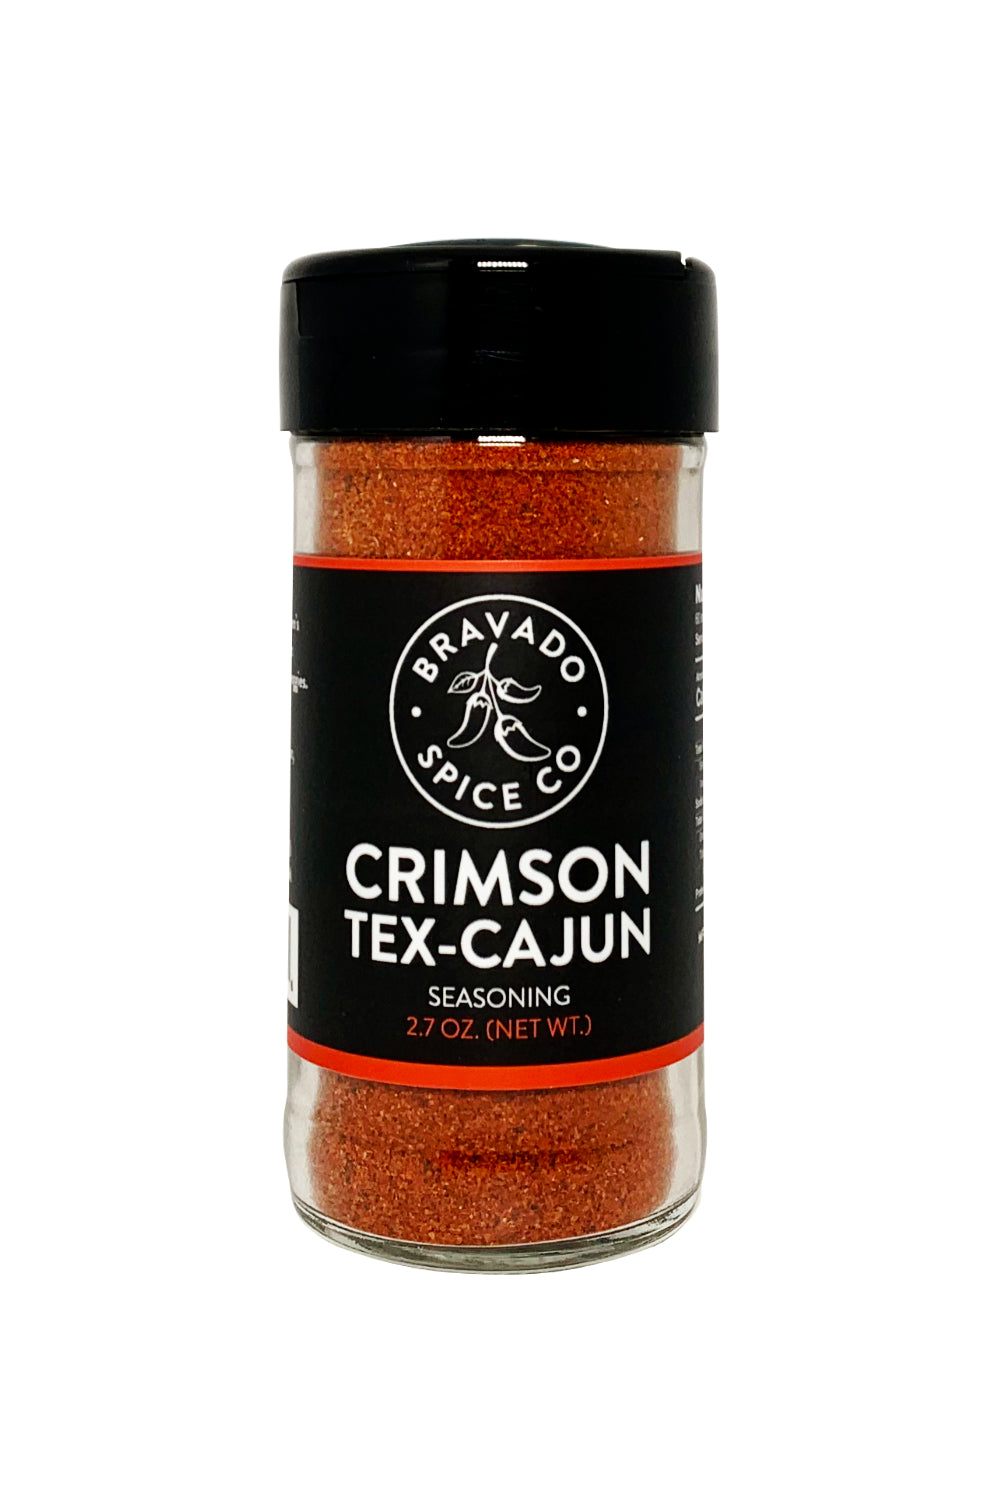 Bravado Spice Crimson Tex-Cajun Seasoning